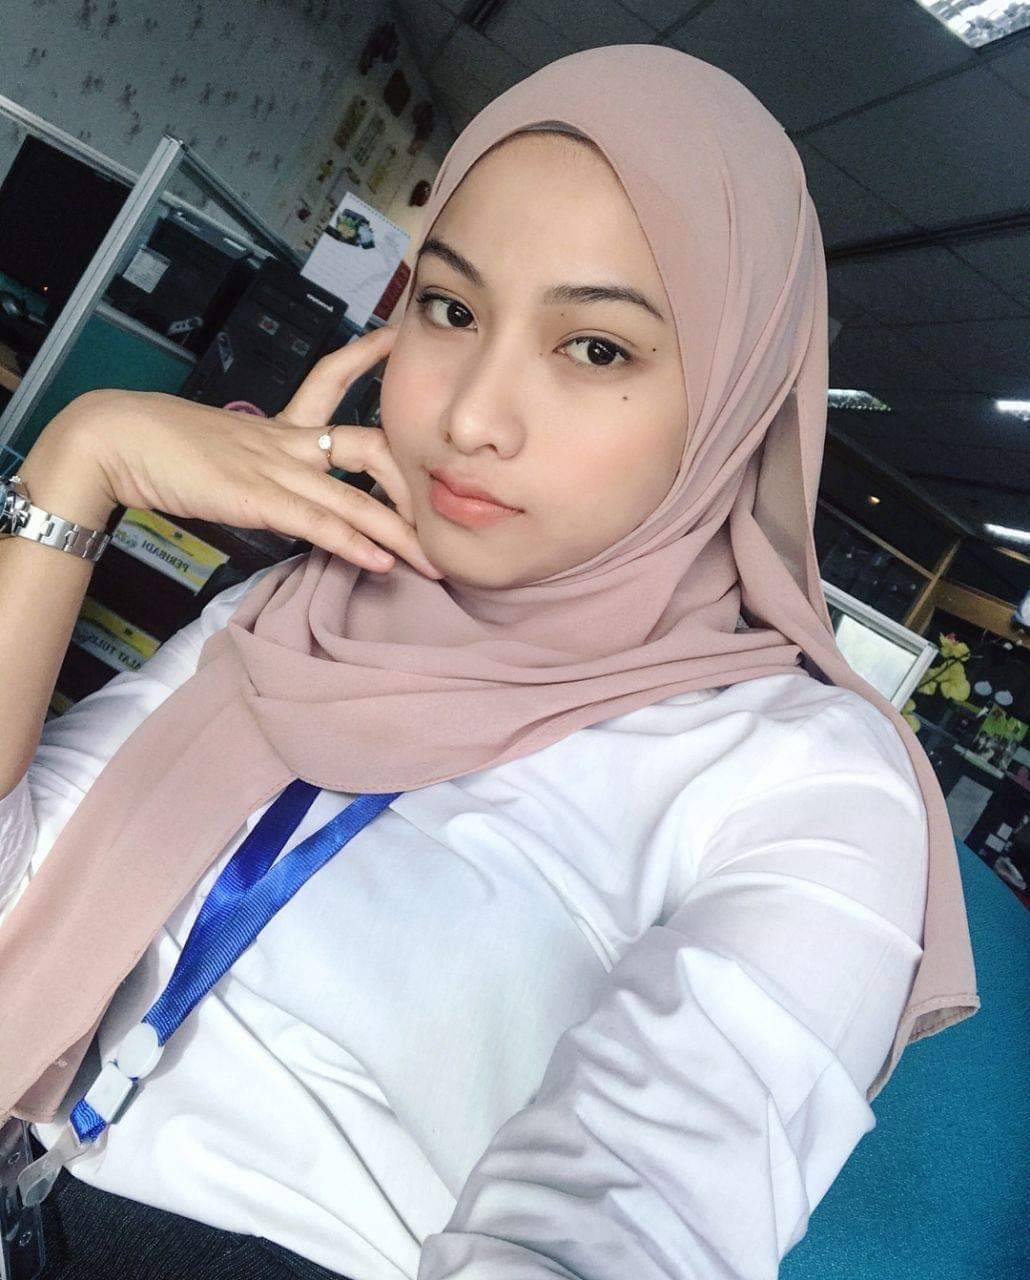 Bokep indo terbaru twitter. Малайзия девушки. Abg sma Colmek 2021. Малайзия скандал хиджаб. Bogel.